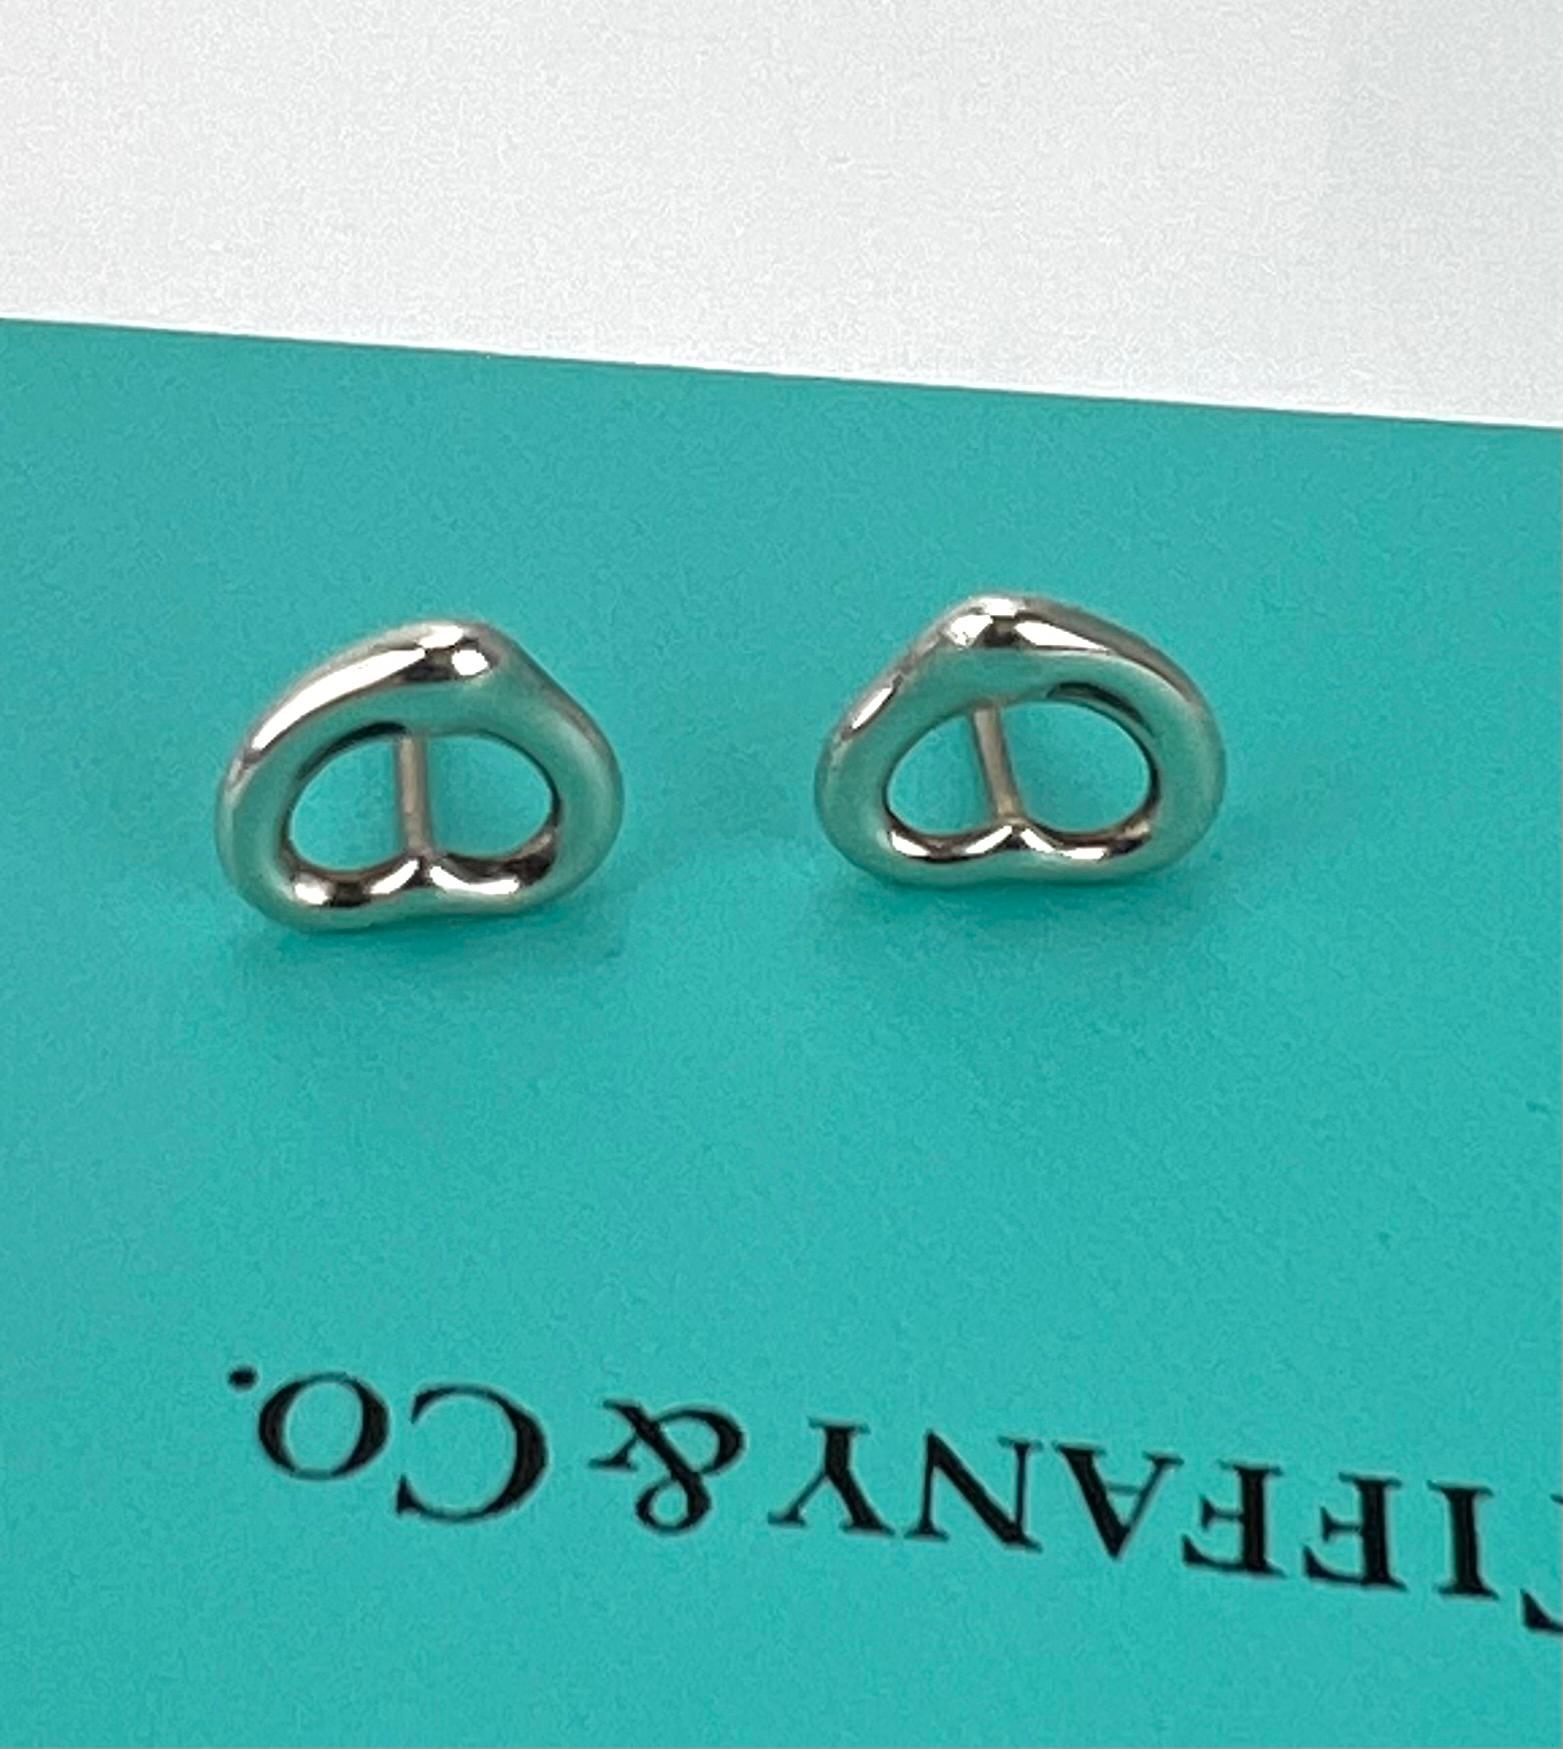  TIFFANY Open Heart Stud Earrings in Sterling Silver 925 Elsa Peretti  4